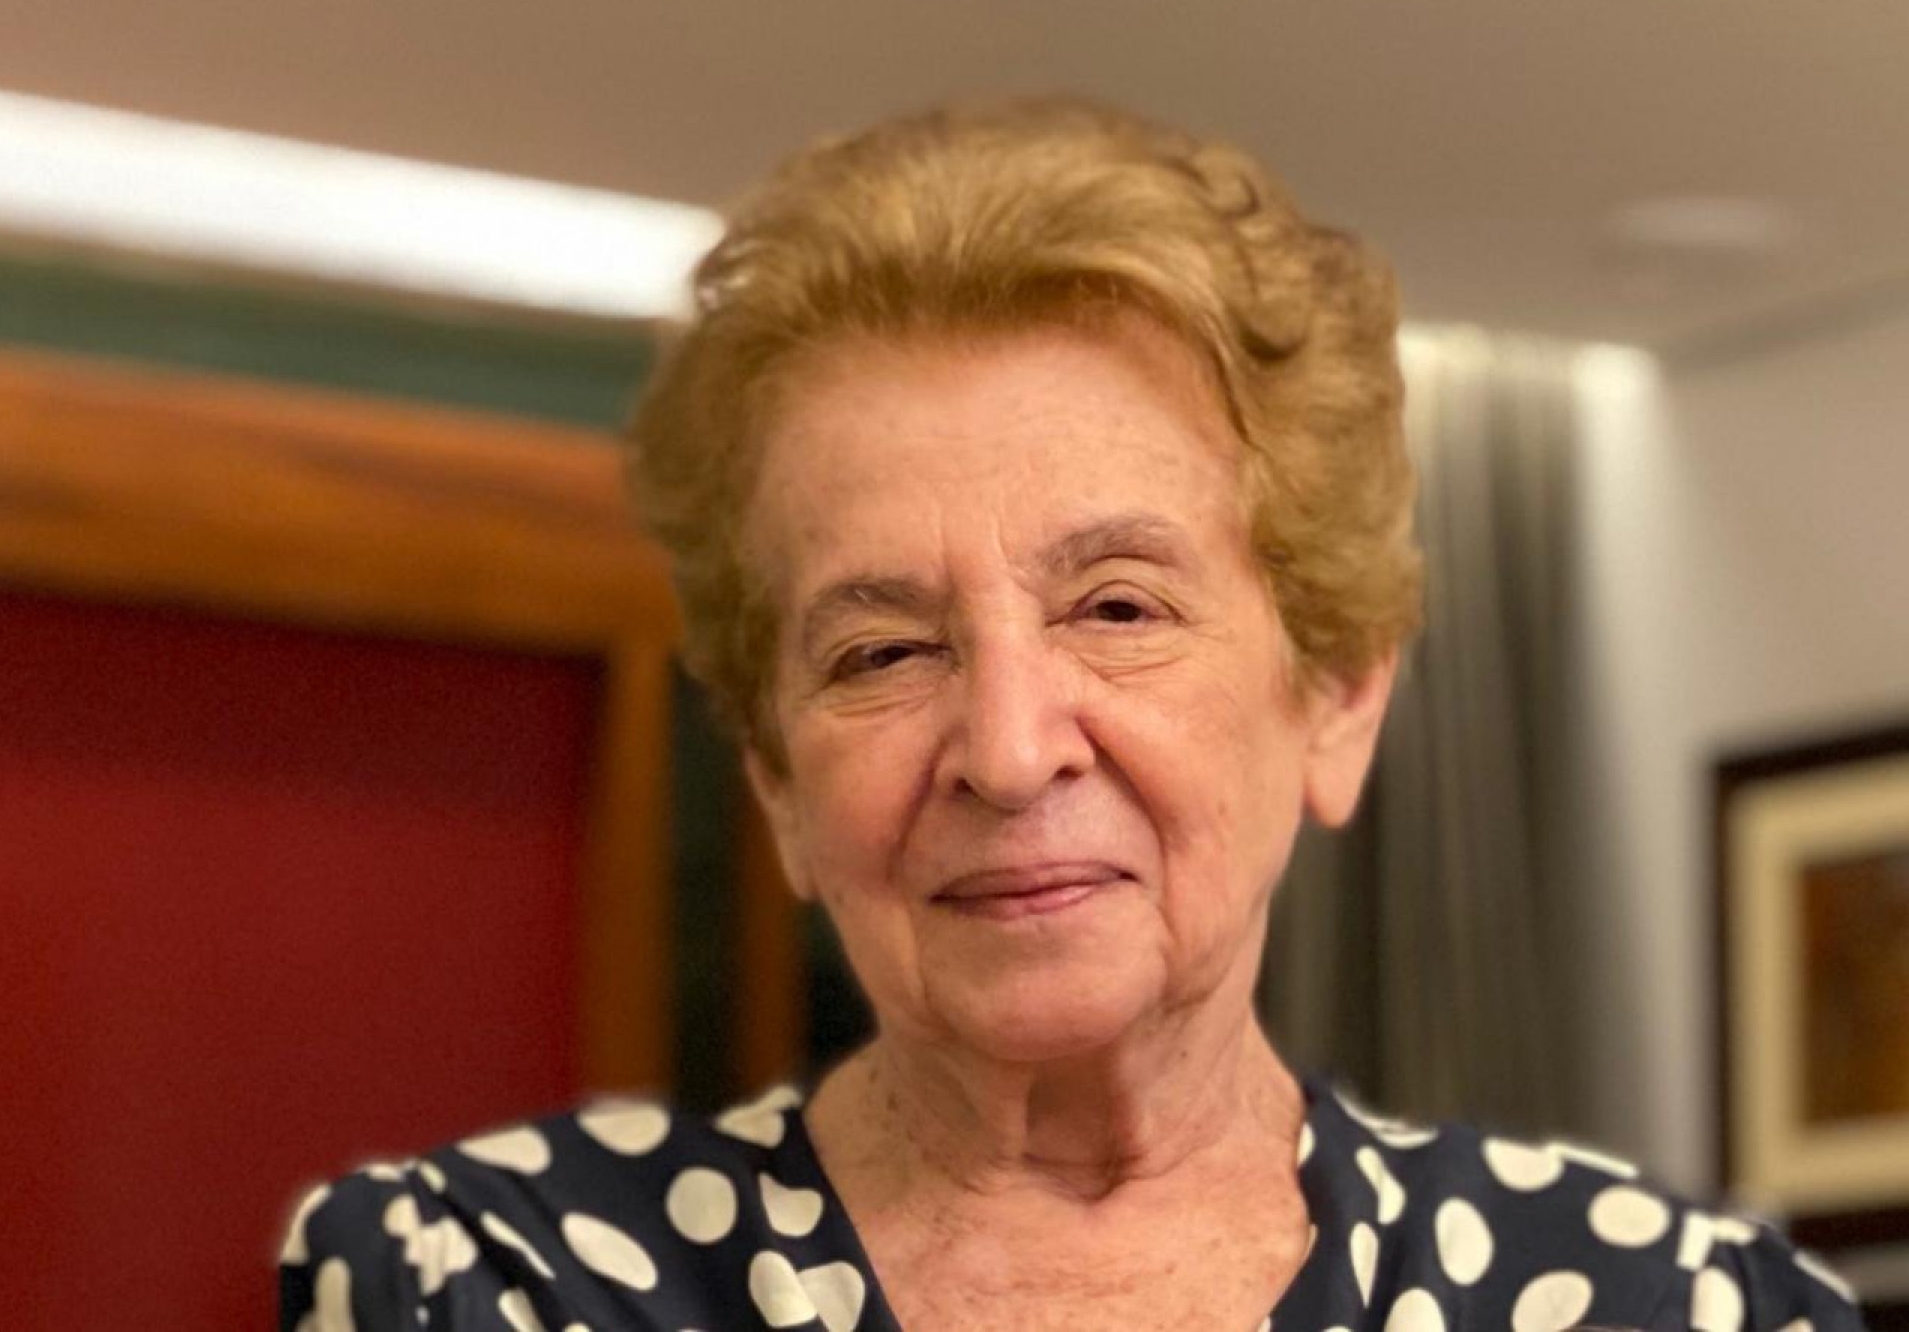 Emilio Ribas Medicina Diagnóstica celebra 84 anos do nascimento de sua fundadora, Zélia Petrola